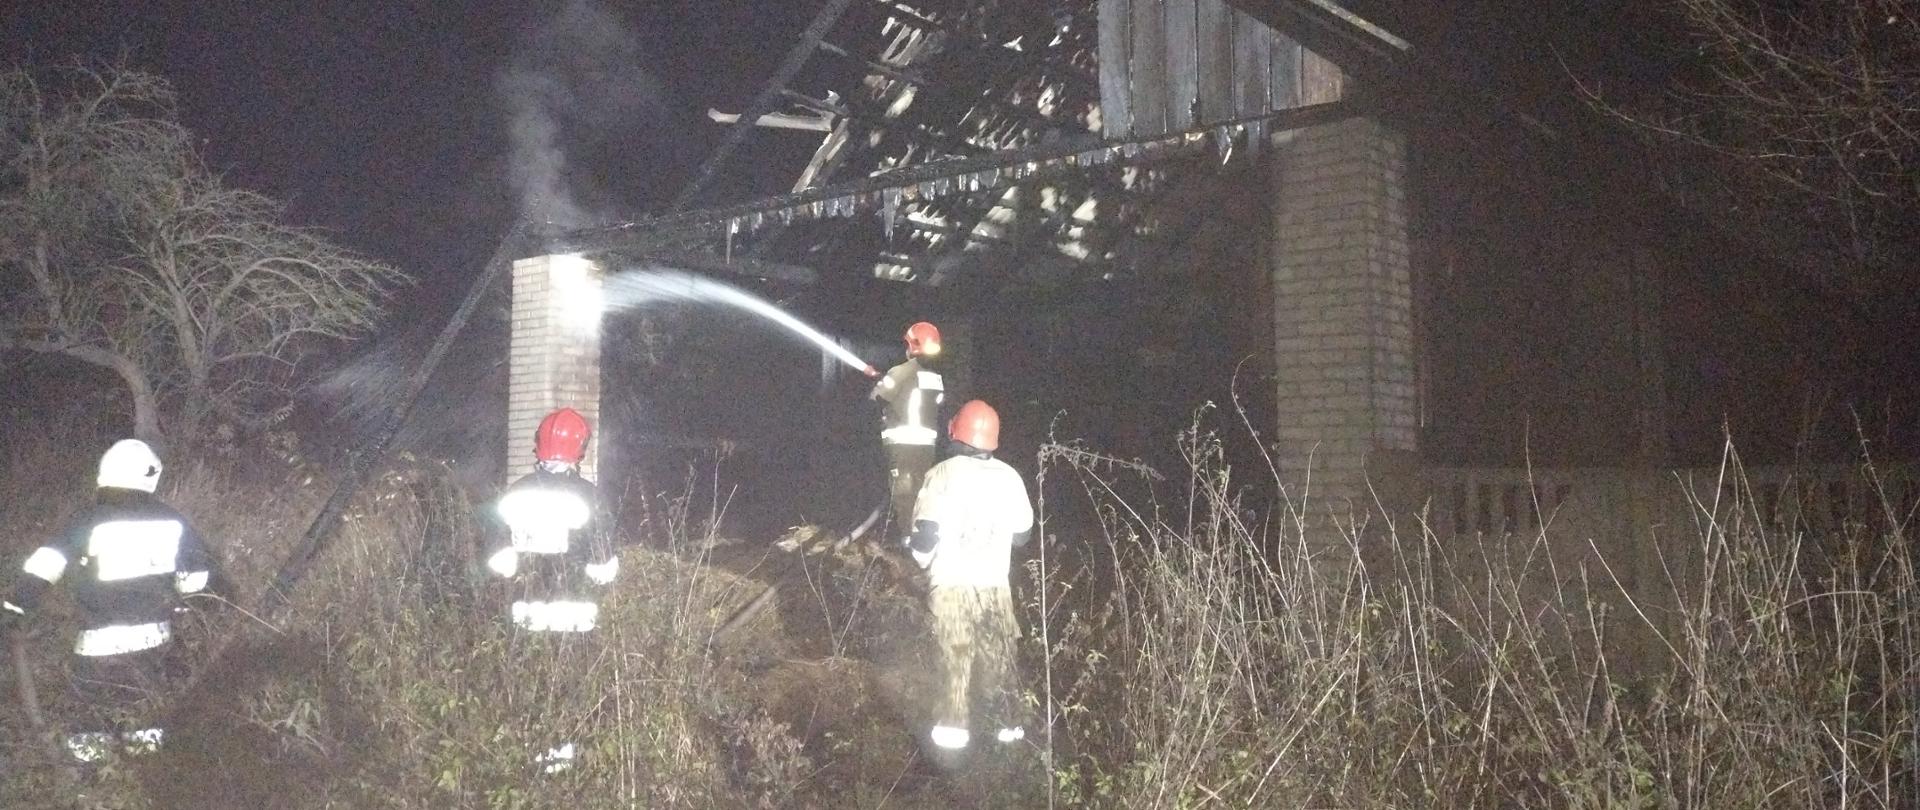 Na zdjęciu widać 4 strażaków, którzy dogaszają tlące się elementy stodoły po pożarze. Działania prowadzone są w porze nocnej.